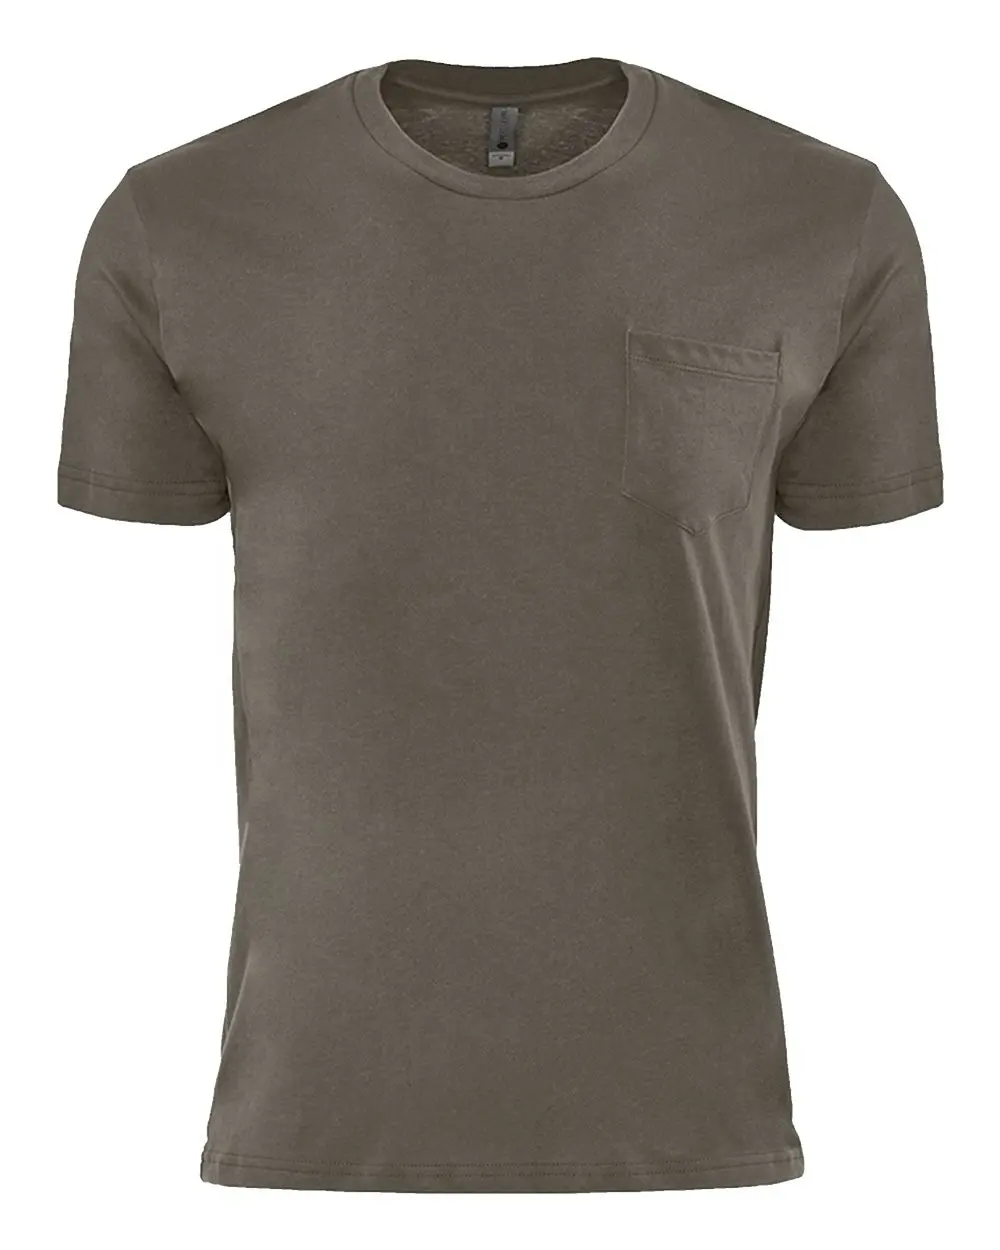 Next Level Unisex Jersey Kurzarm-Taschenshirt - 100 % gekämmte und ringgesponnete Baumwolle und Ihr eigenes Logo atmungsaktiv Taschenshirt